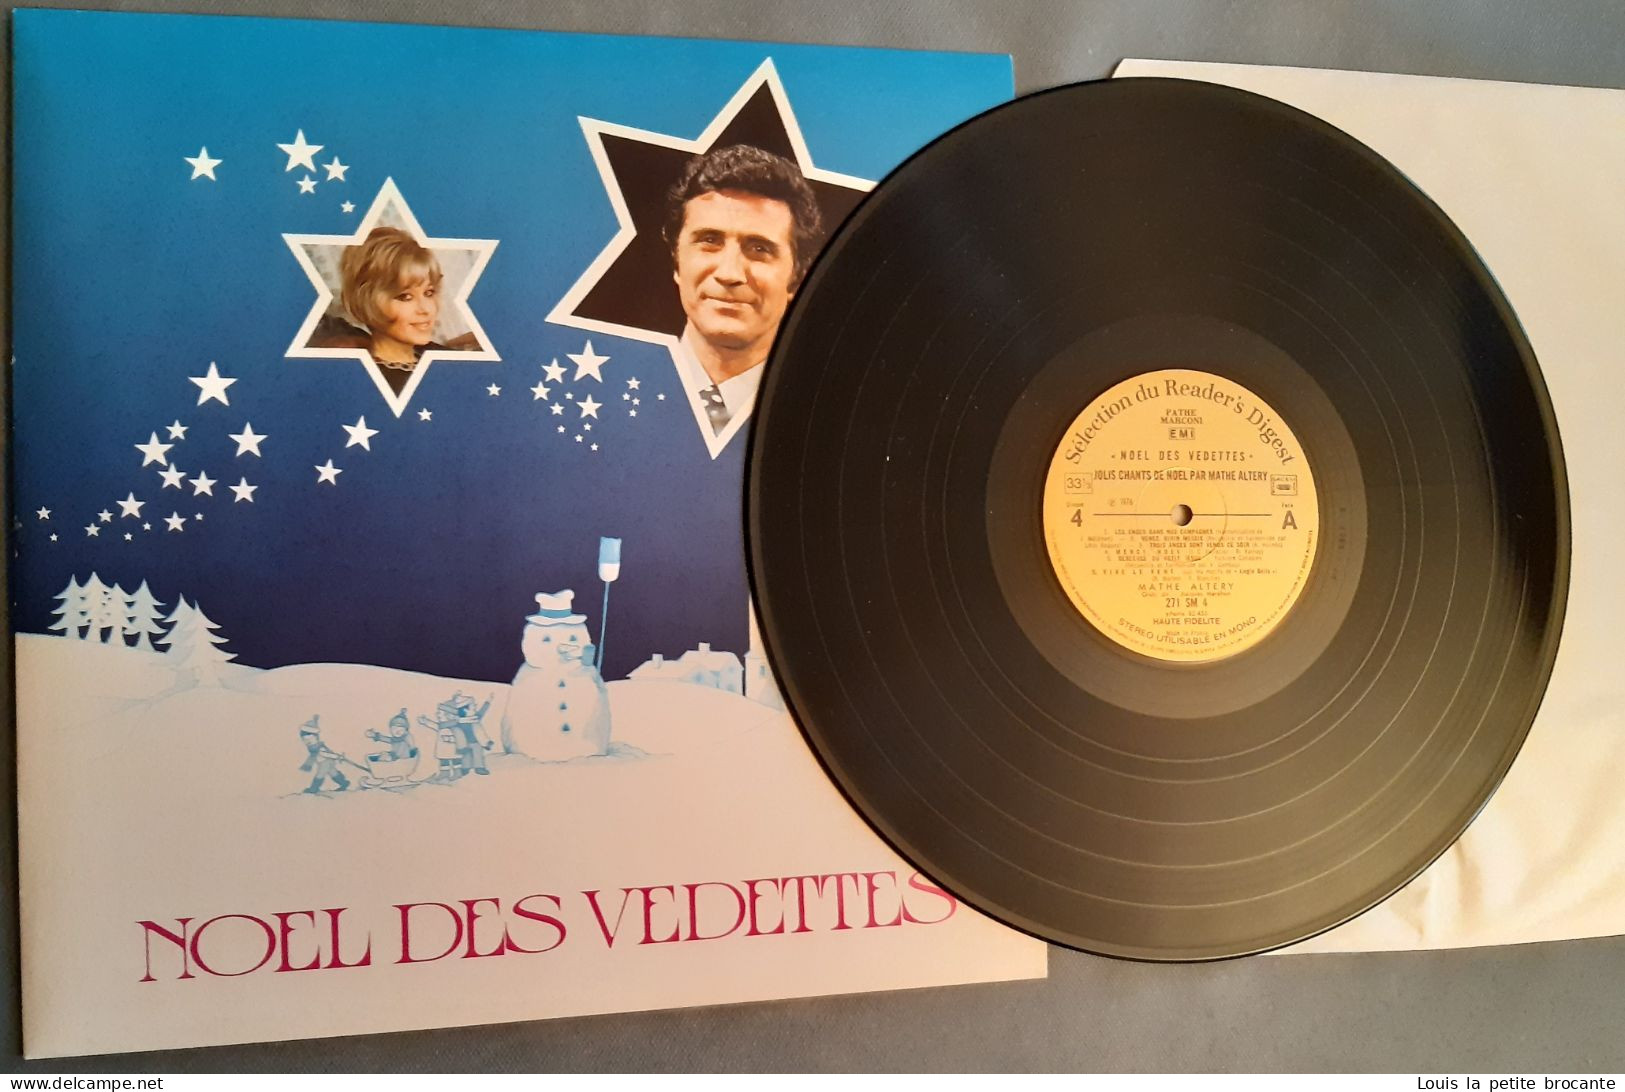 Coffret De 4 Disques Vinyles "Noël Des Vedettes", 33 Tours Stéréo. PATHE MARCONI, EMI, Sélection Du Reader's Digest 1974 - Complete Collections